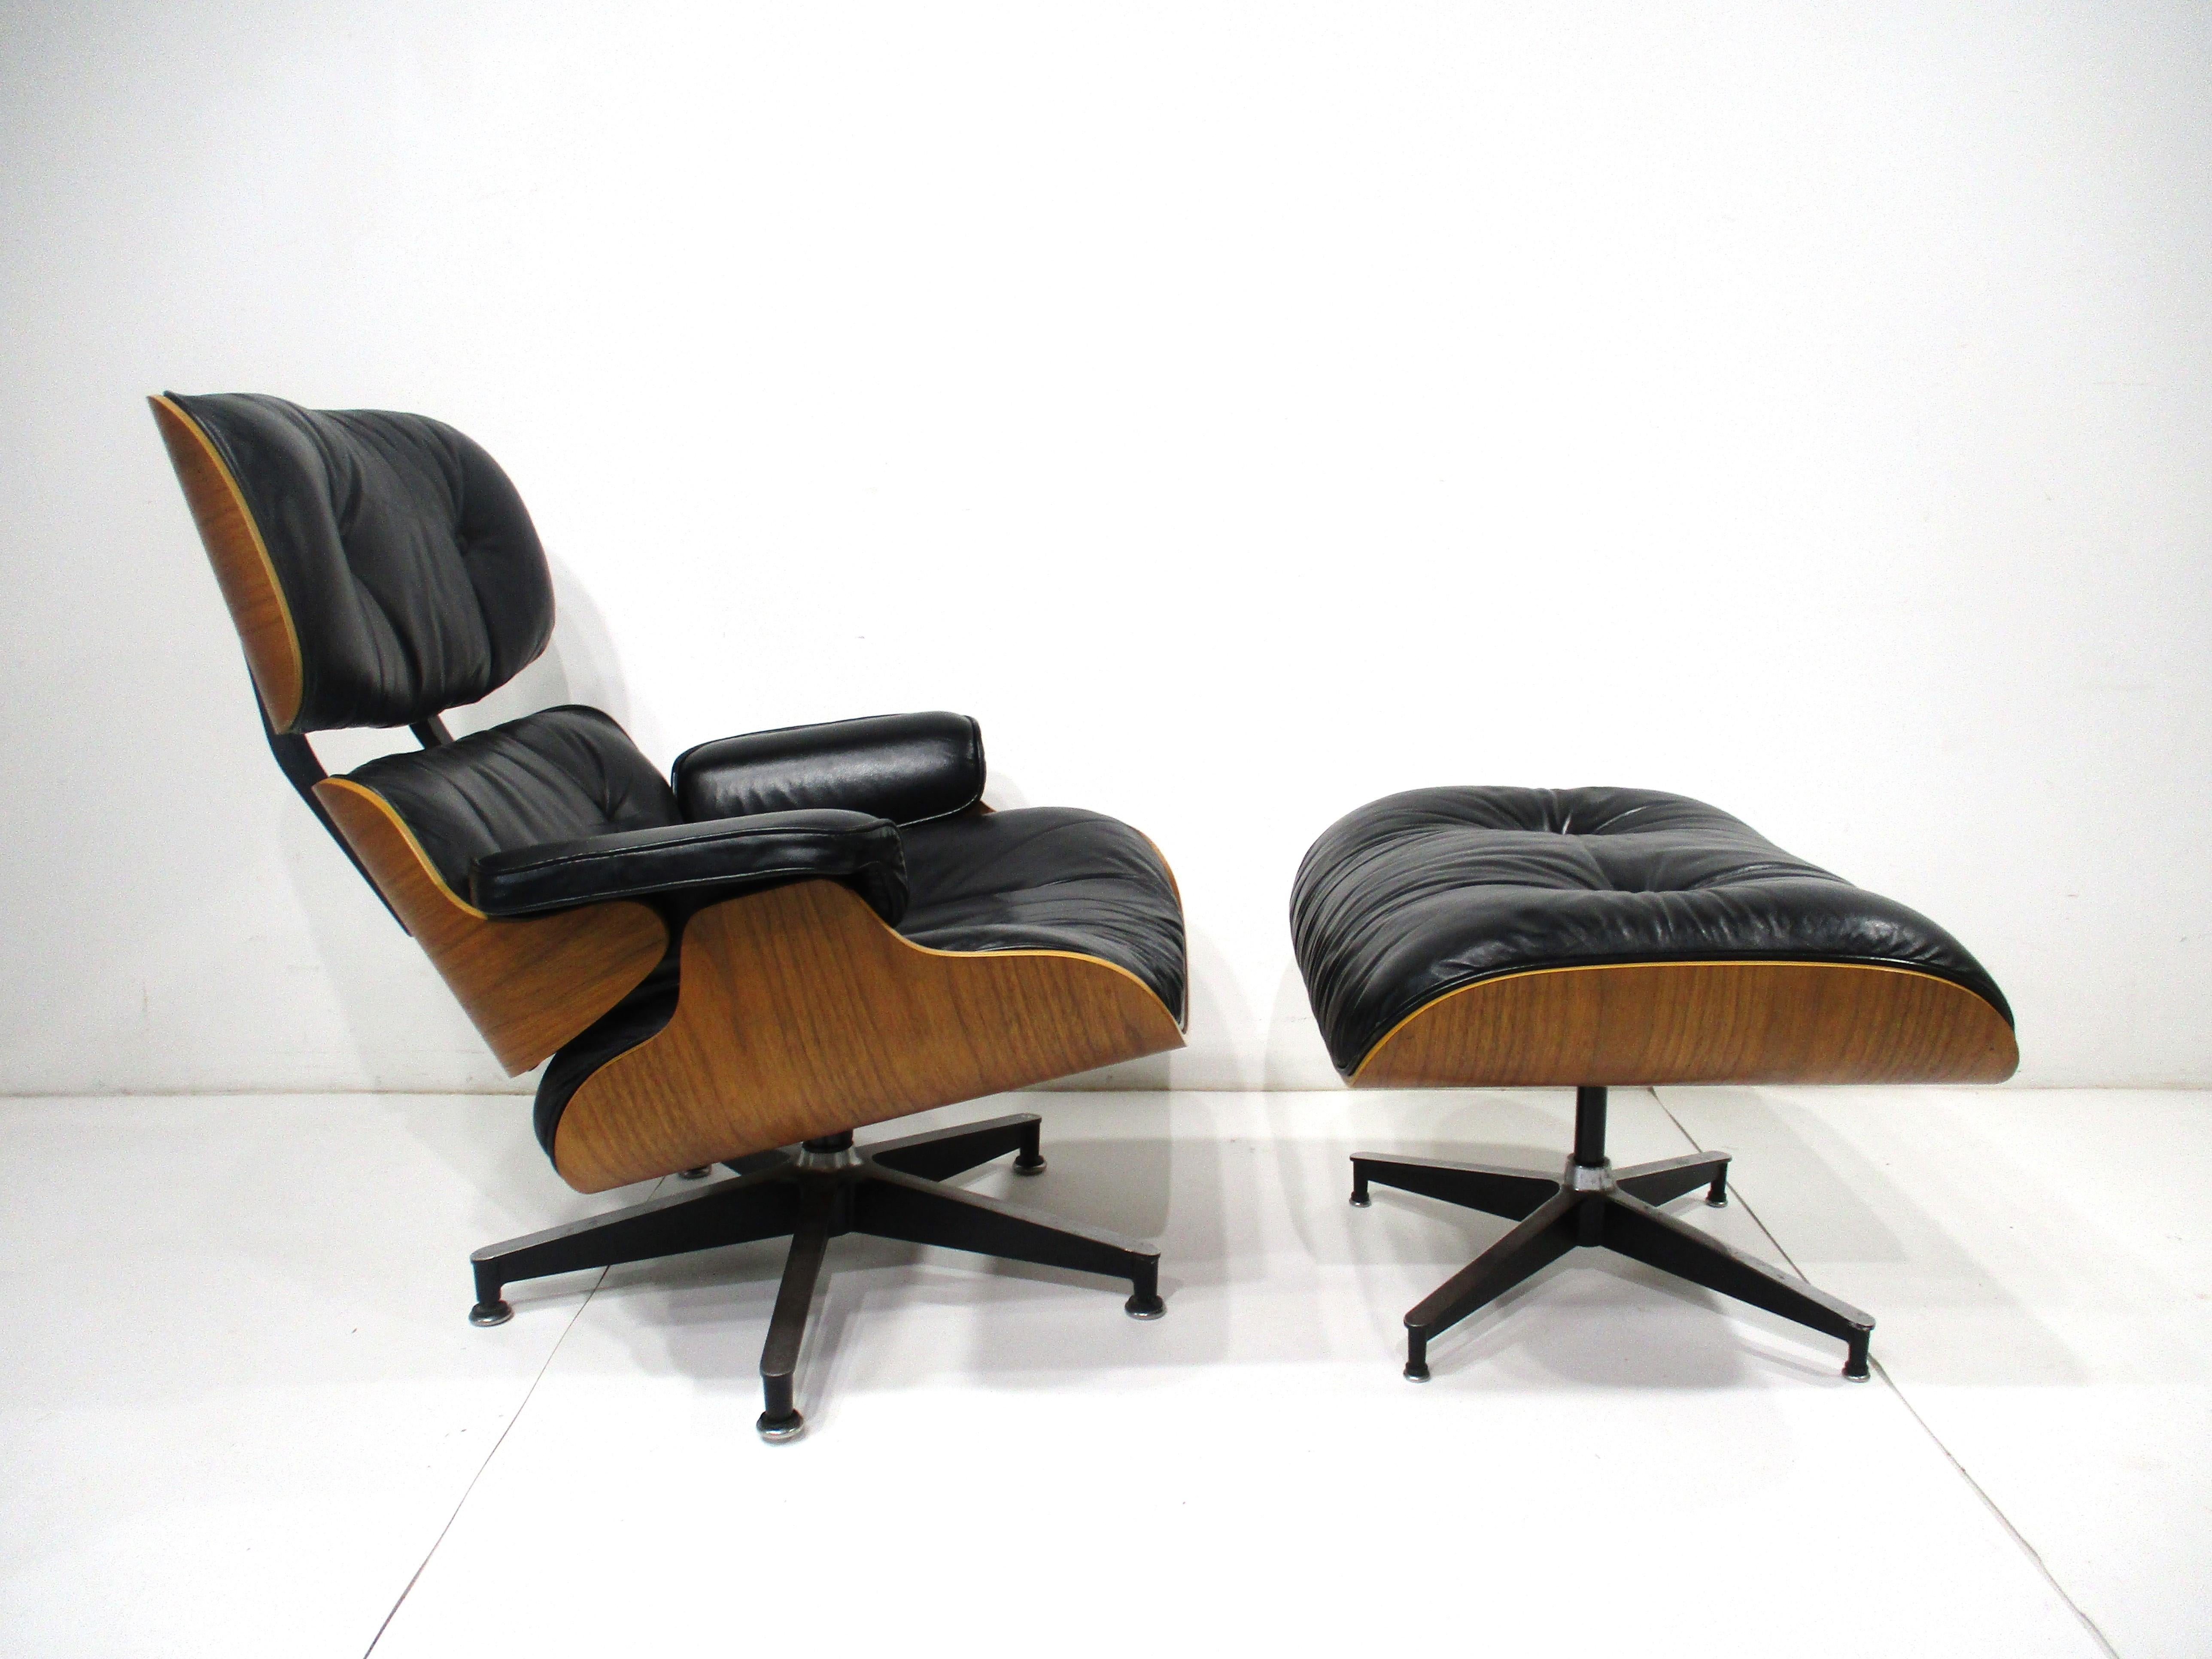 La chaise de salon et l'ottoman classiques et emblématiques des Eames avec un cadre en noyer, des coussins rembourrés en cuir noir souple et des pieds en aluminium moulé. Les dimensions de l'ottoman sont de 25.75